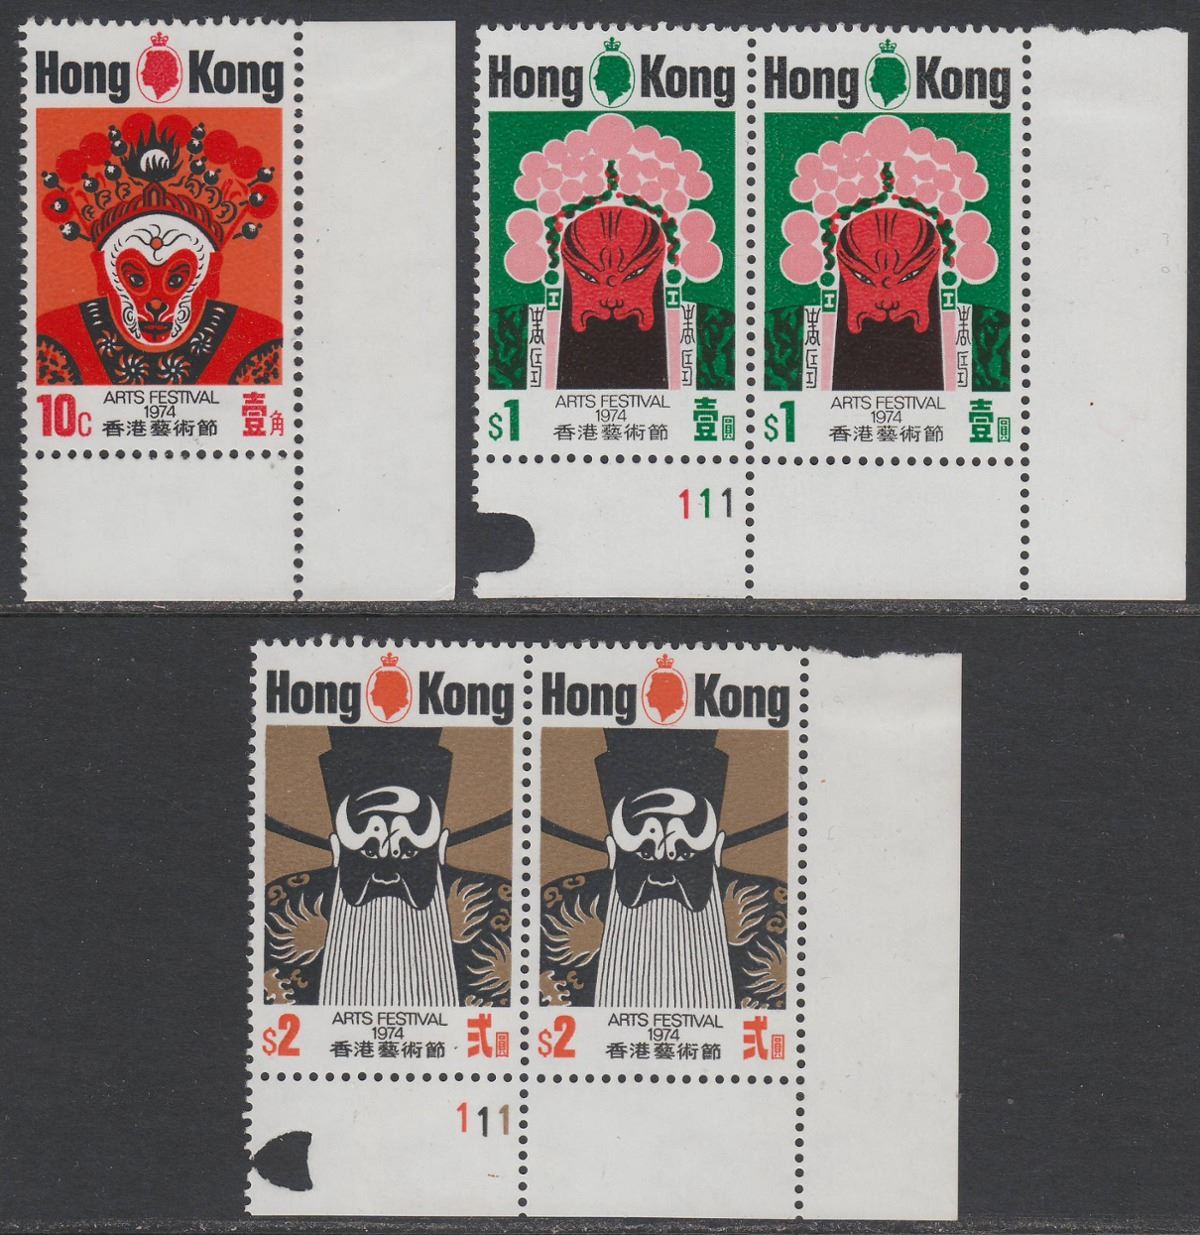 Hong Kong 1974 QEII Arts Festival Set Mint SG304-306 cat £8.50++